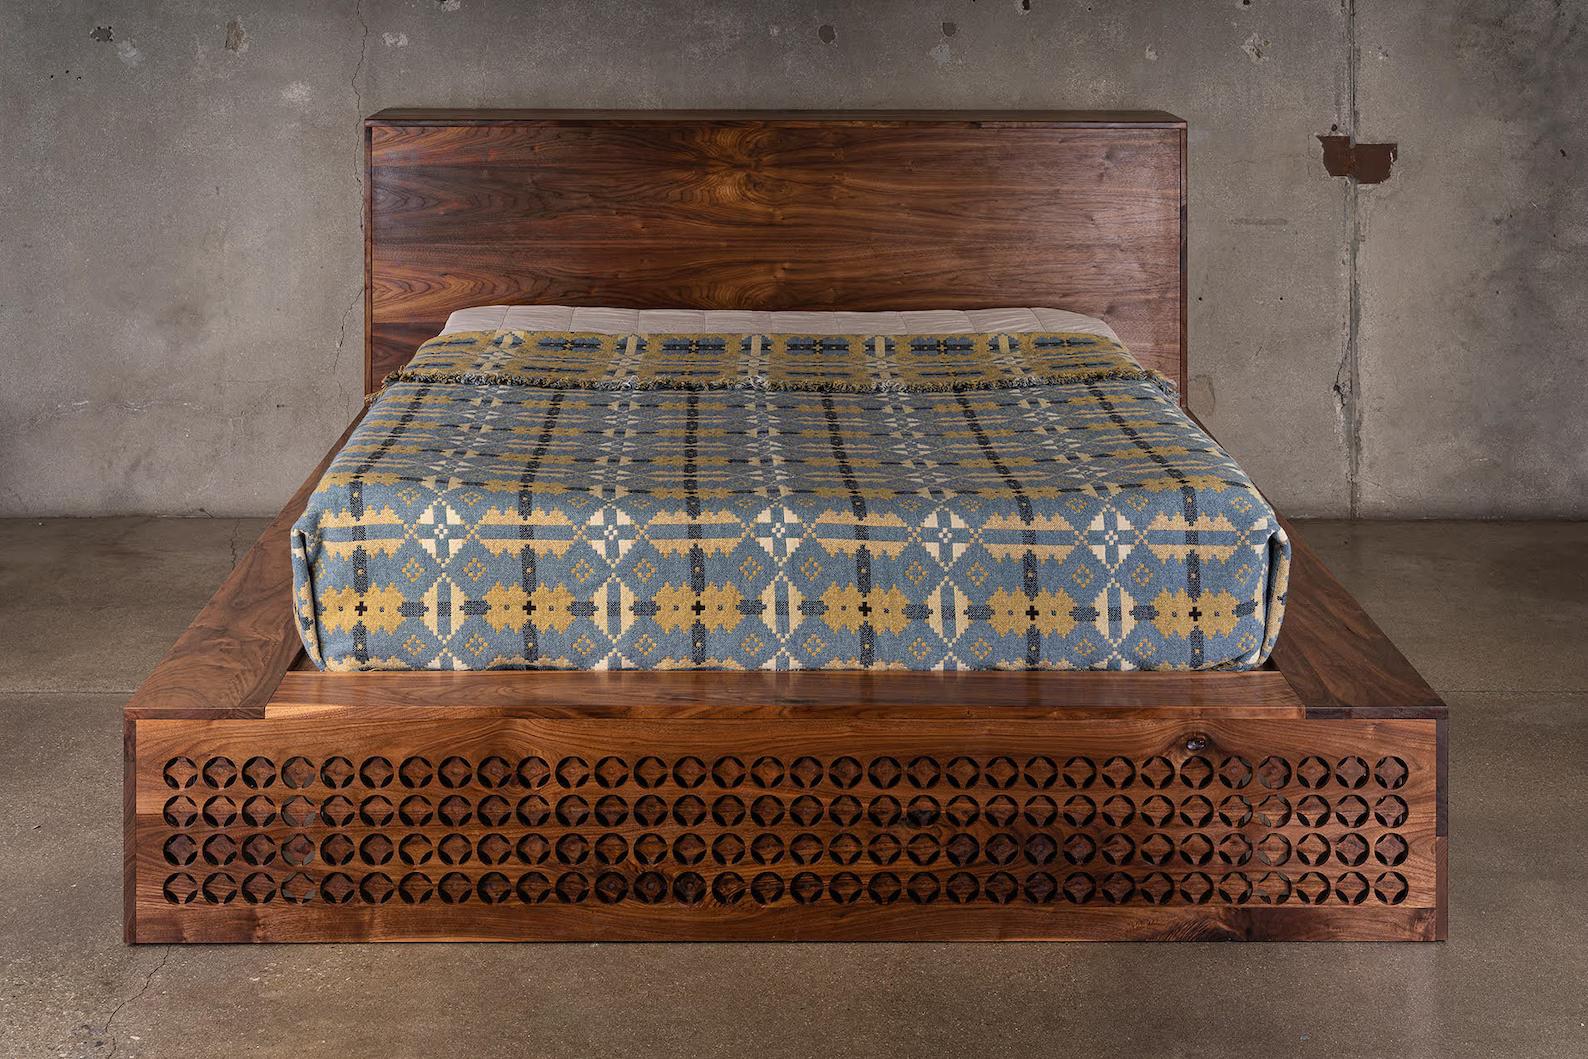 Das Hing-Bett ist eine wahre Liebesarbeit. Das Muster im Holz entsteht durch eine Reihe von überlappenden Löchern, die in das Holz geschnitzt werden. Das hier abgebildete Bett wurde aus schwarzem Nussbaumholz gefertigt. Die Gesamtgrundfläche für